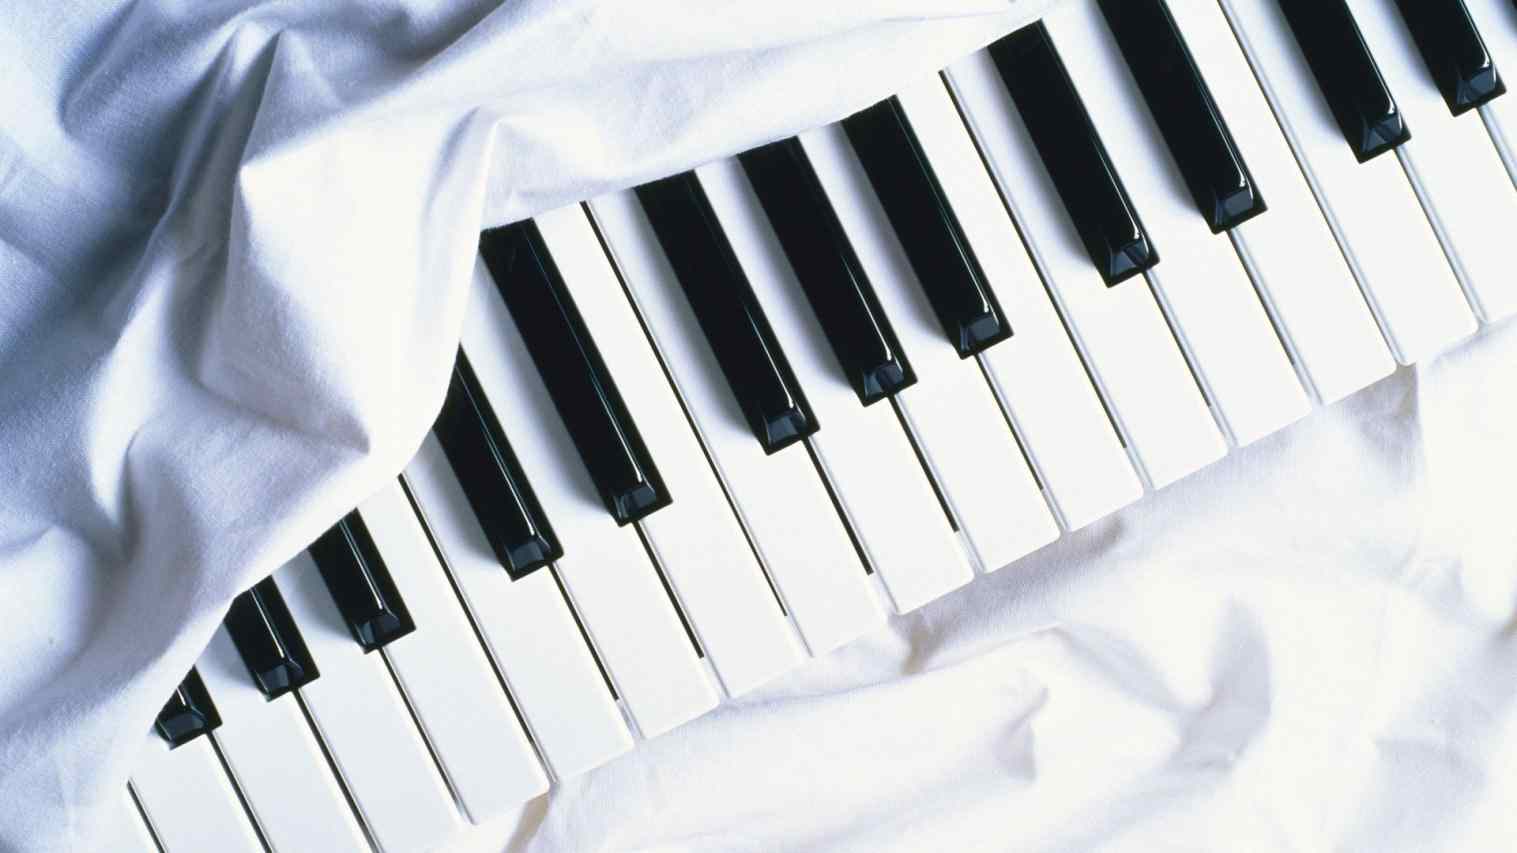 Piano Keys Drawing at GetDrawings Free download